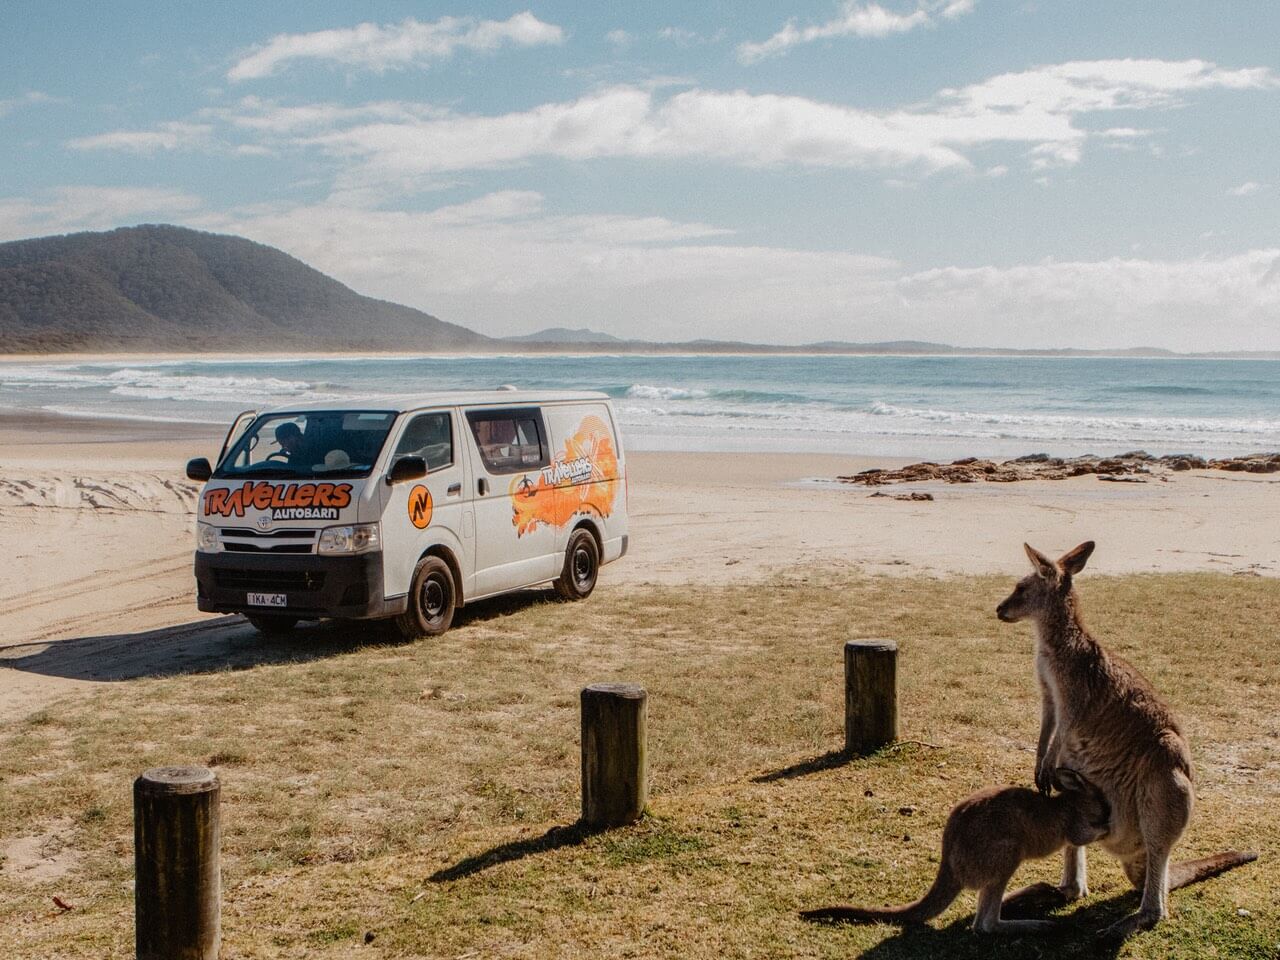 Travellers Autobarn Camper am Strand in Australien mit Känguruh